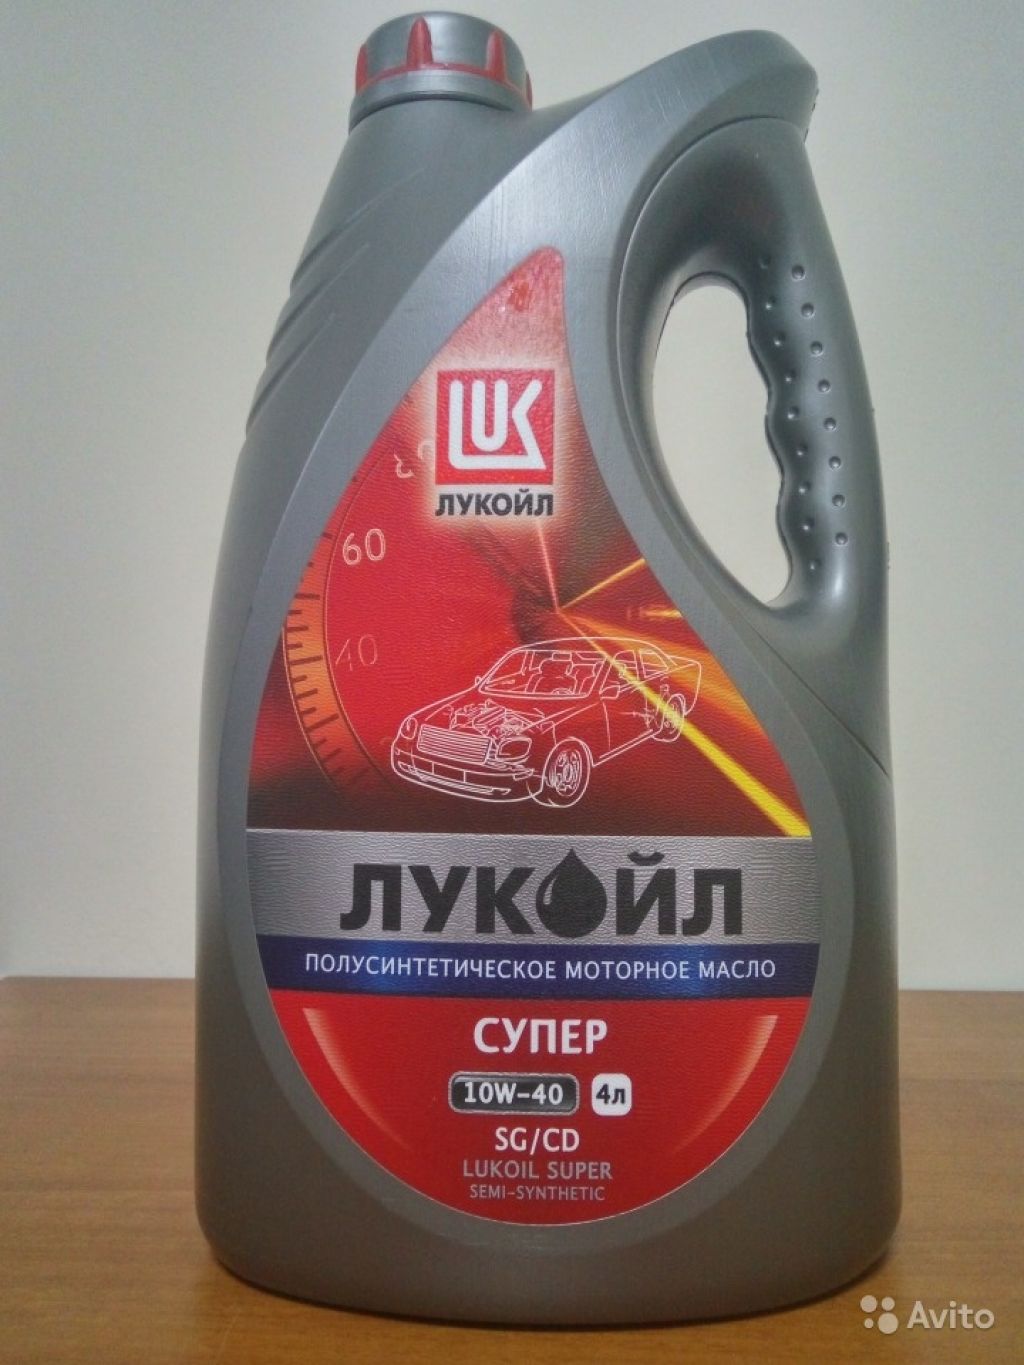 Масло 10w 40 цена 4 литра лукойл. Lukoil 19192. Московское моторное масло. Автокосметика Лукойл. 19191 Лукойл.